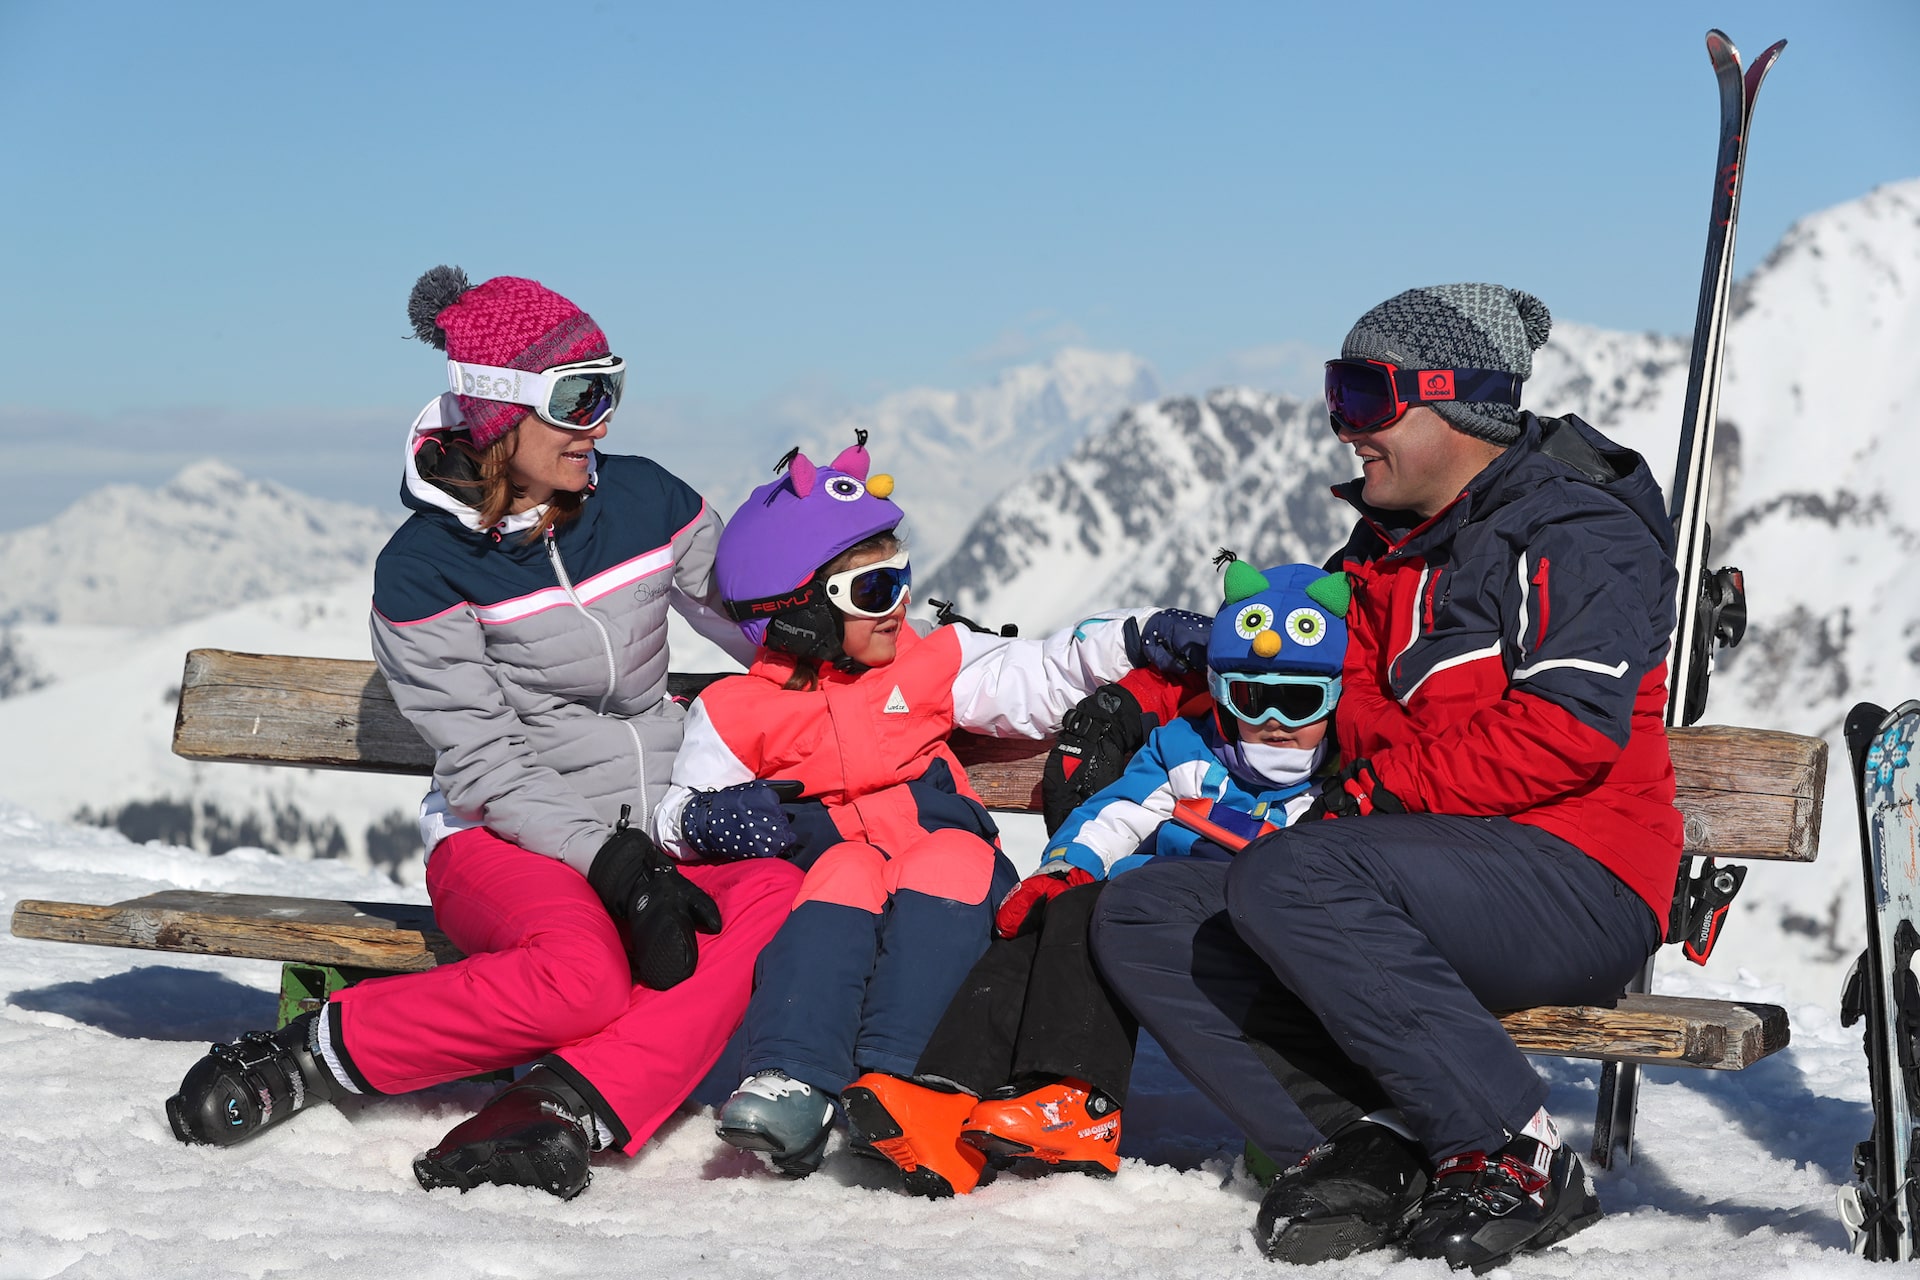 Protéger la peau de son enfant au ski 